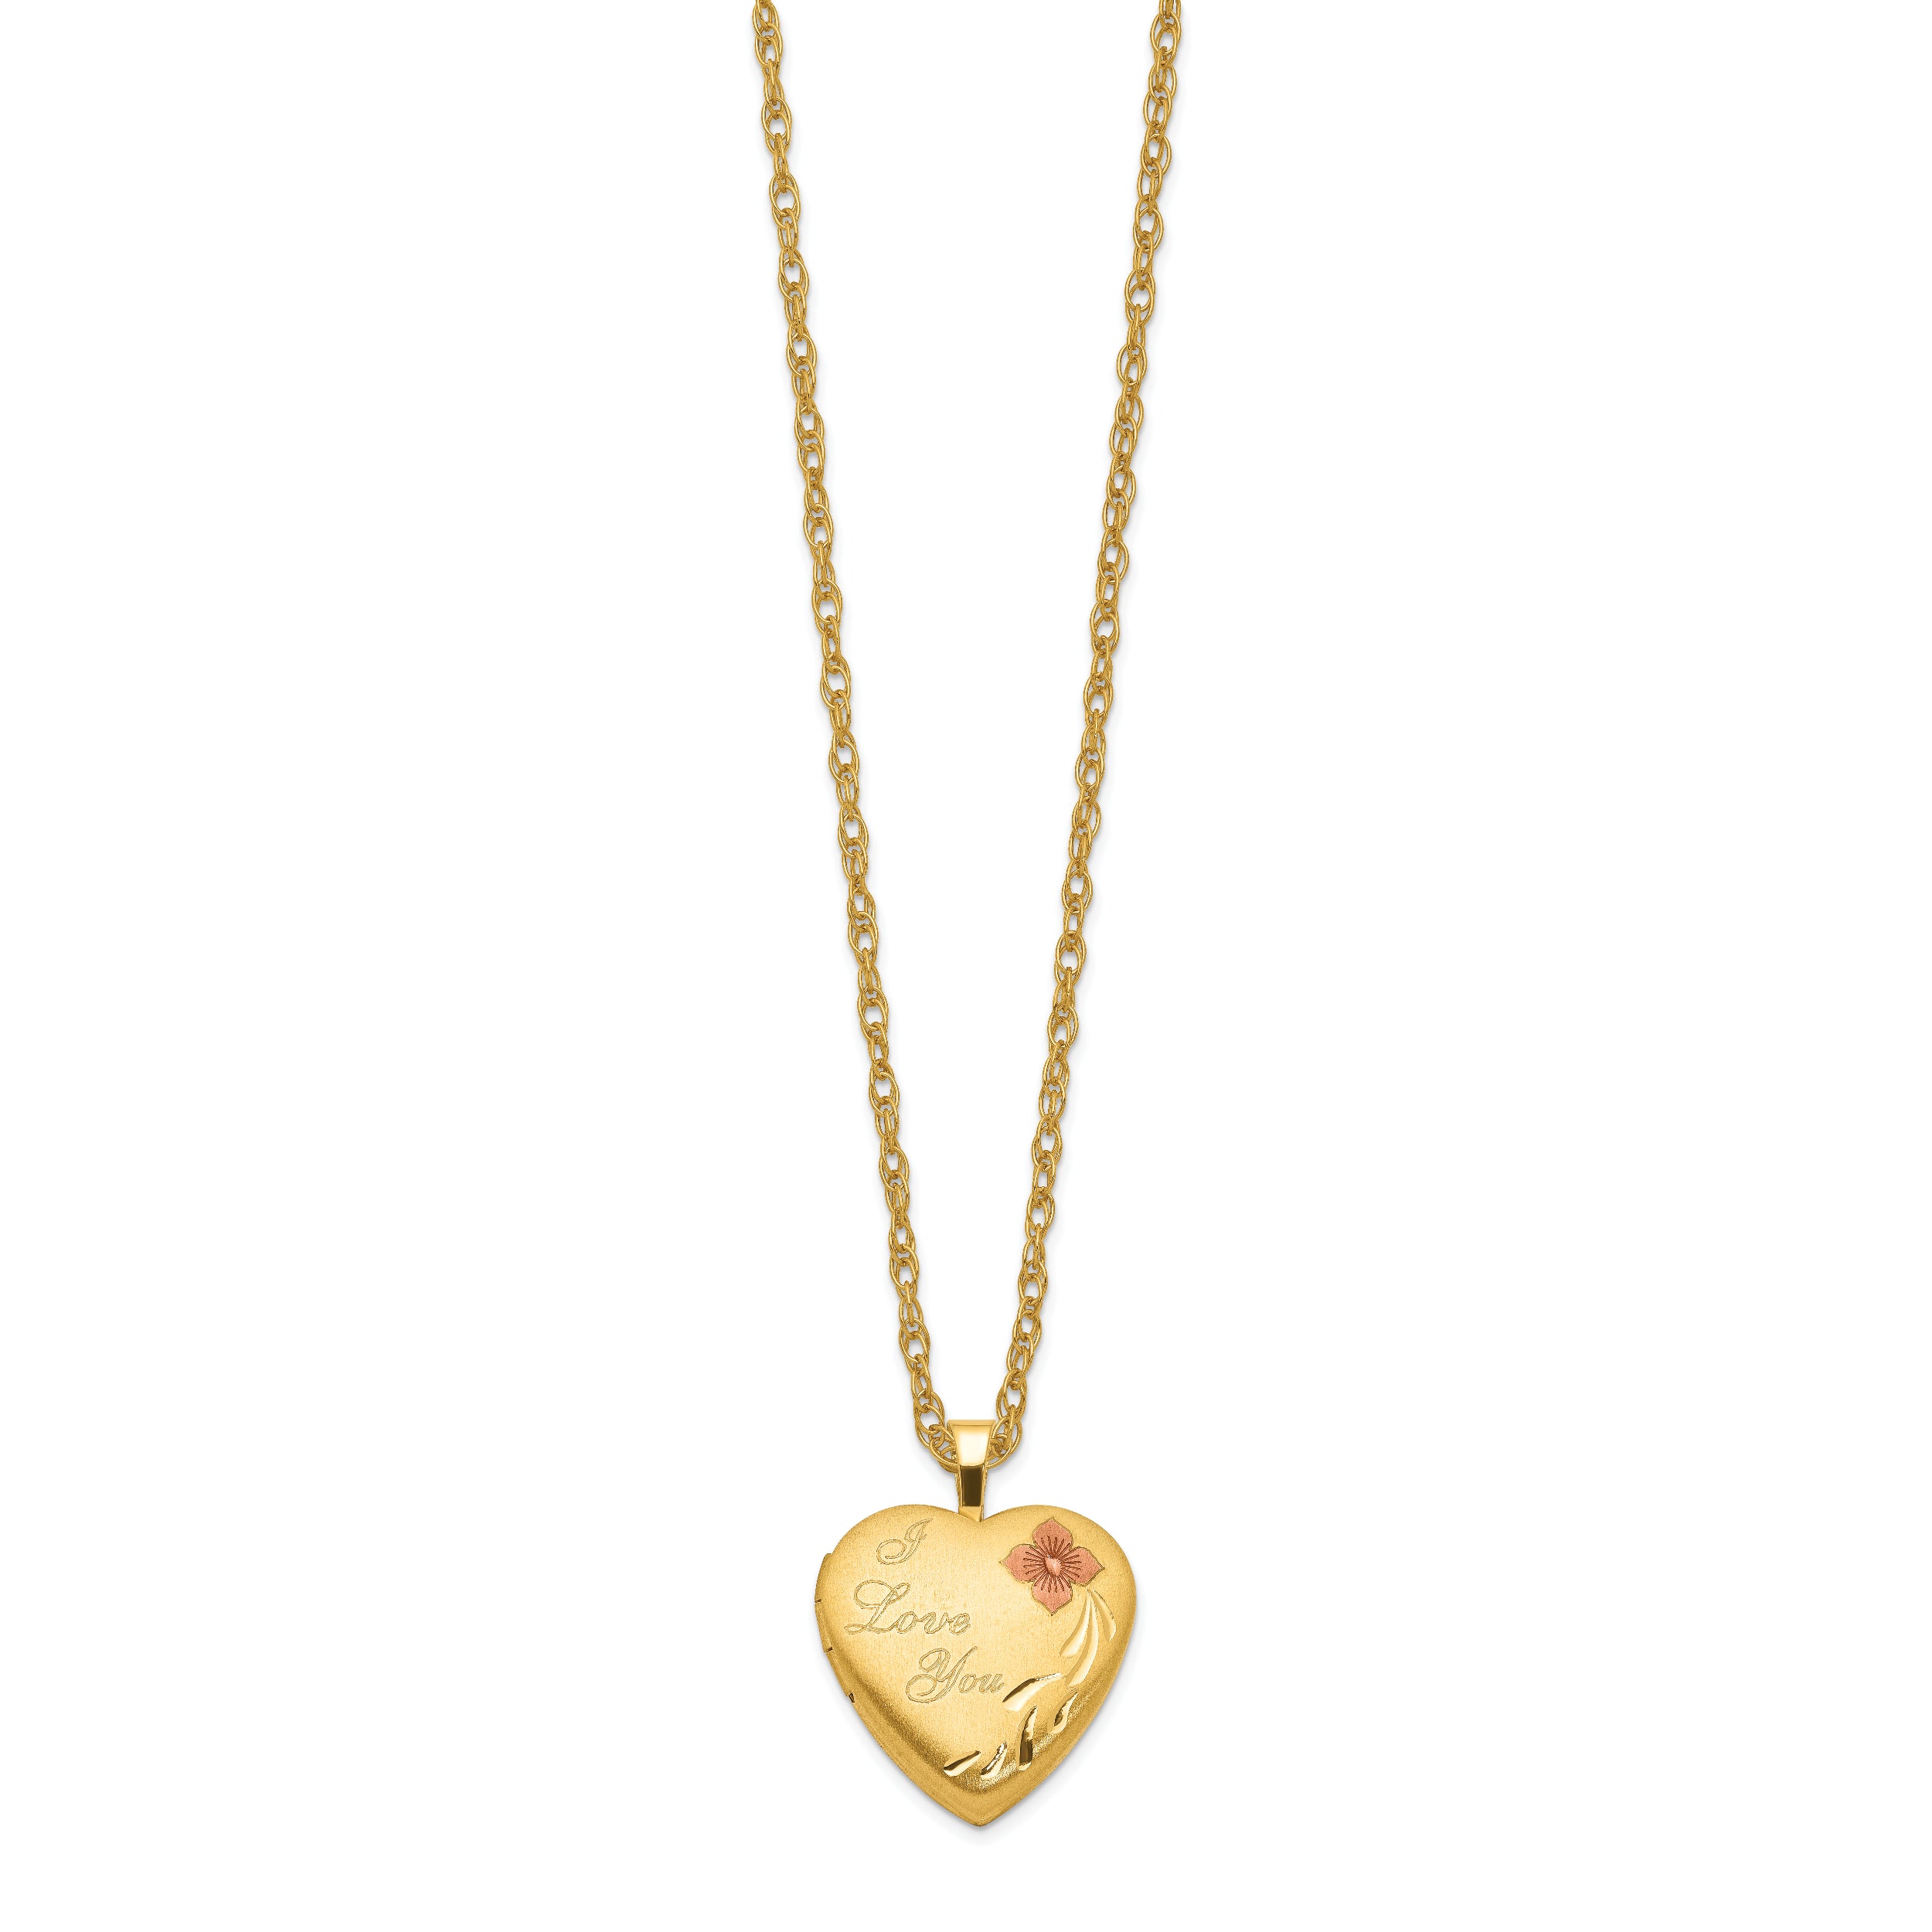 1/20 Gold-Filled 16mm Enameled Flower "I Love You" Heart Locket Necklace